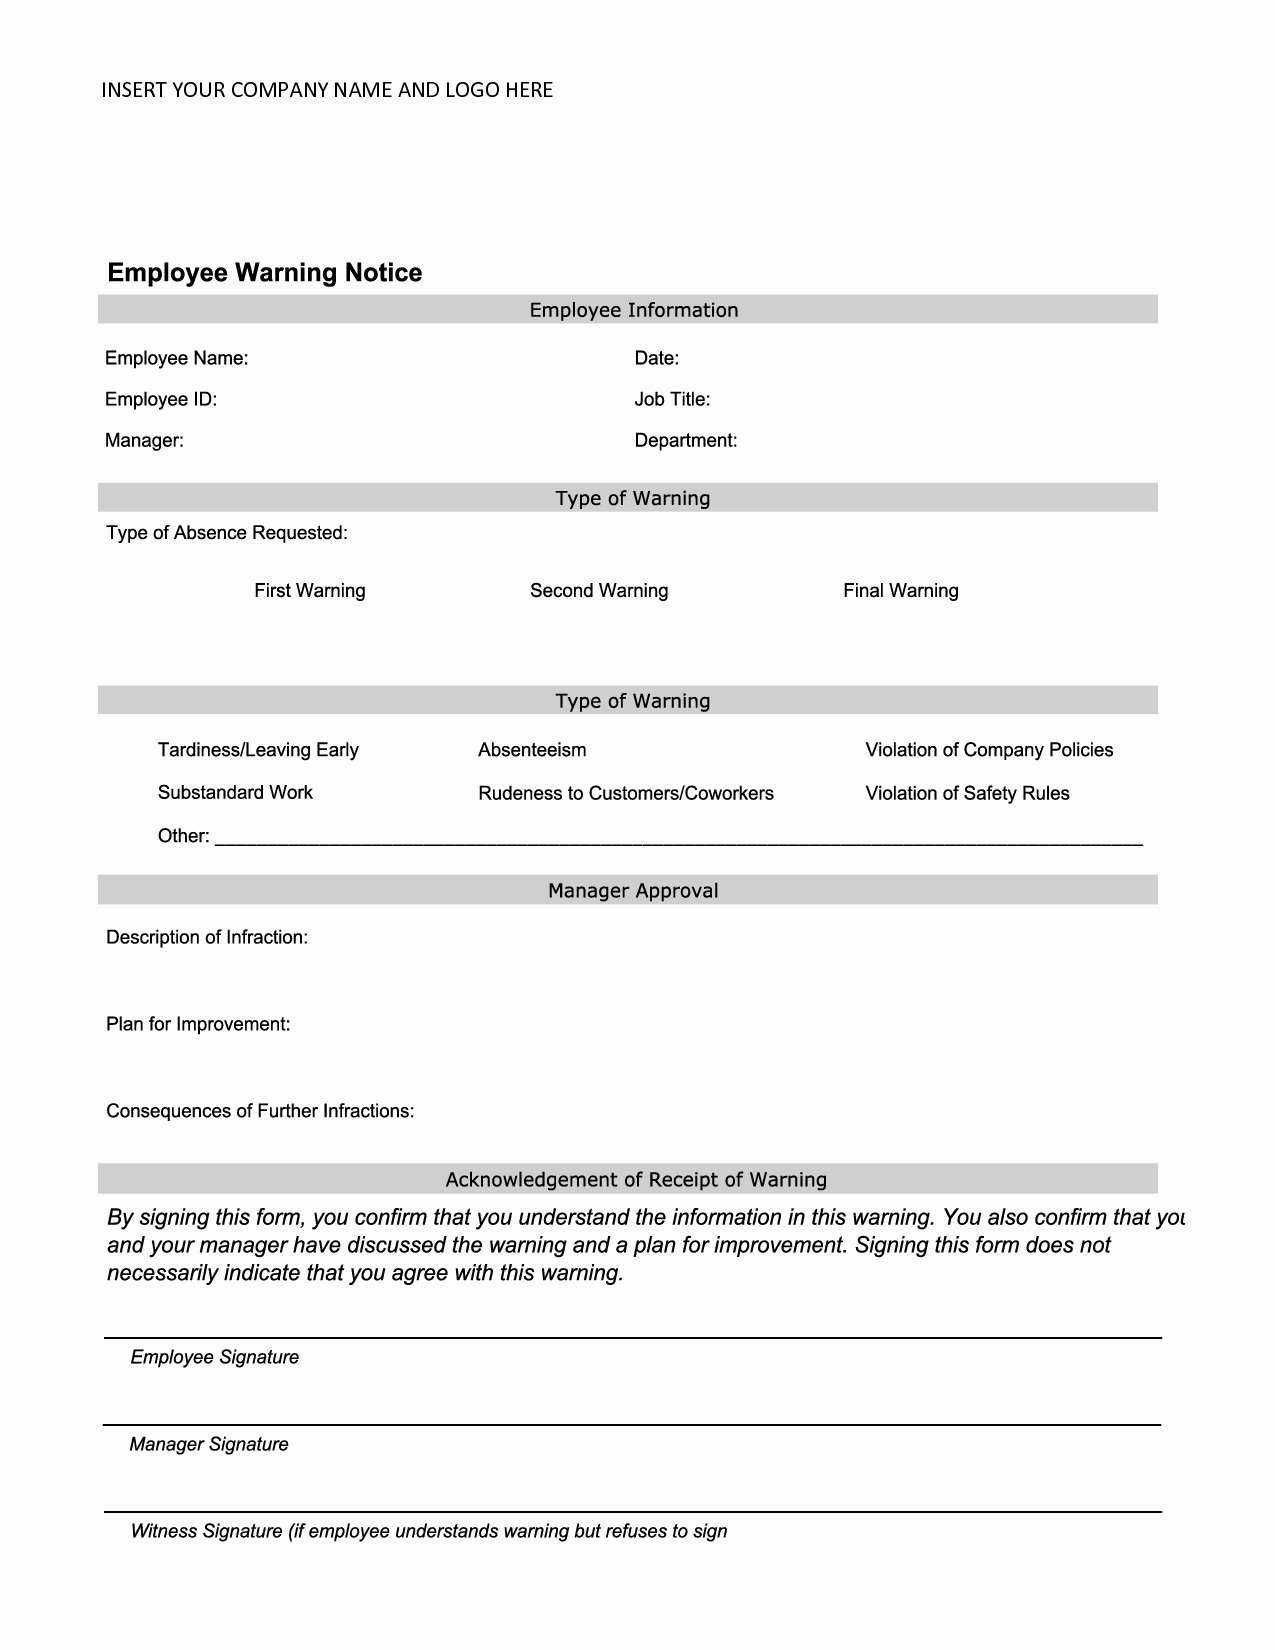 Employee Written Warning Template Free Beautiful Employee Warning Notice Employee forms